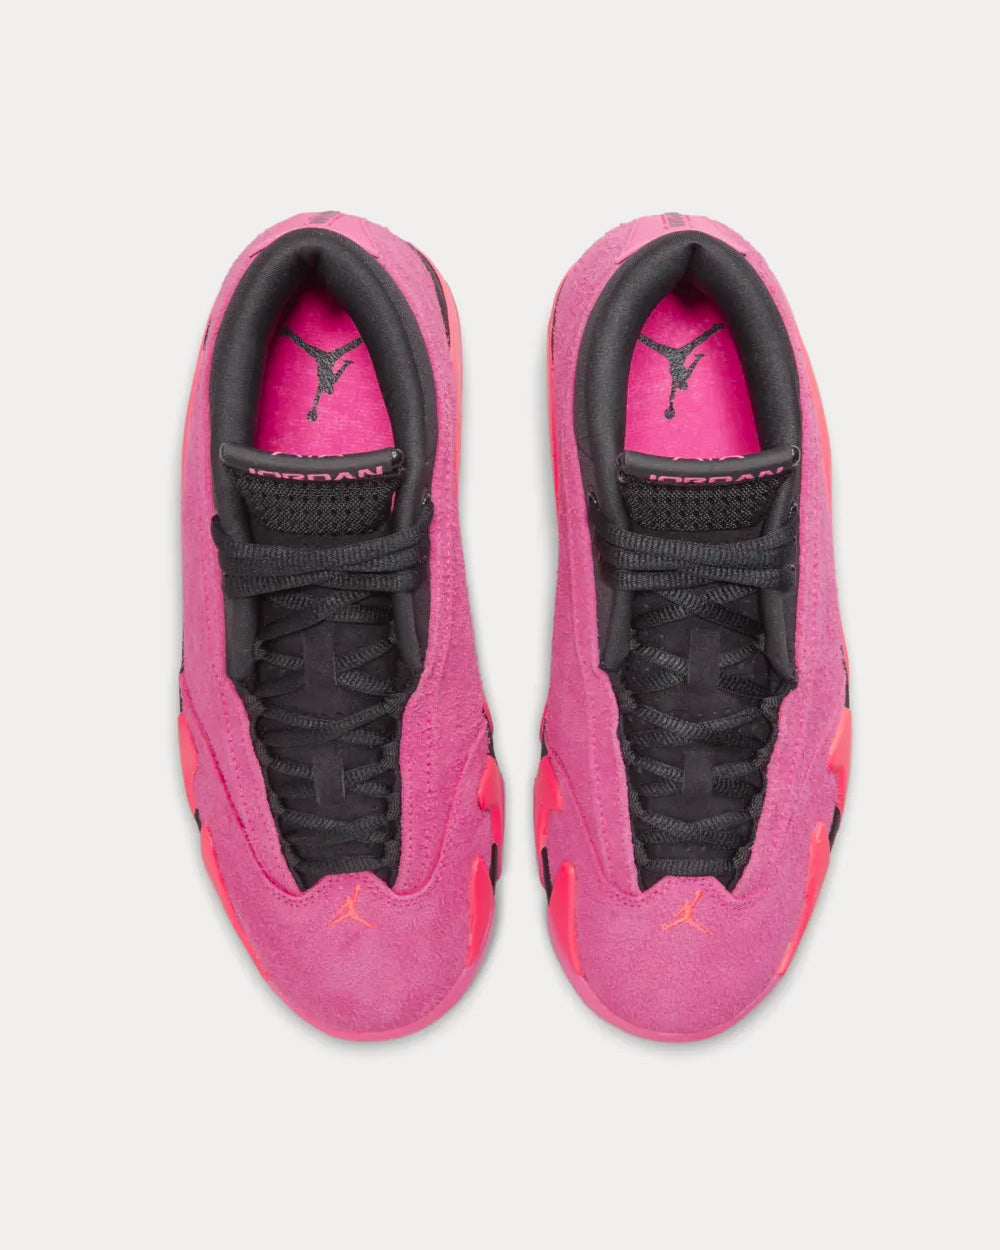 Jordan - Air Jordan 14 Low Shocking Pink Low Top Sneakers